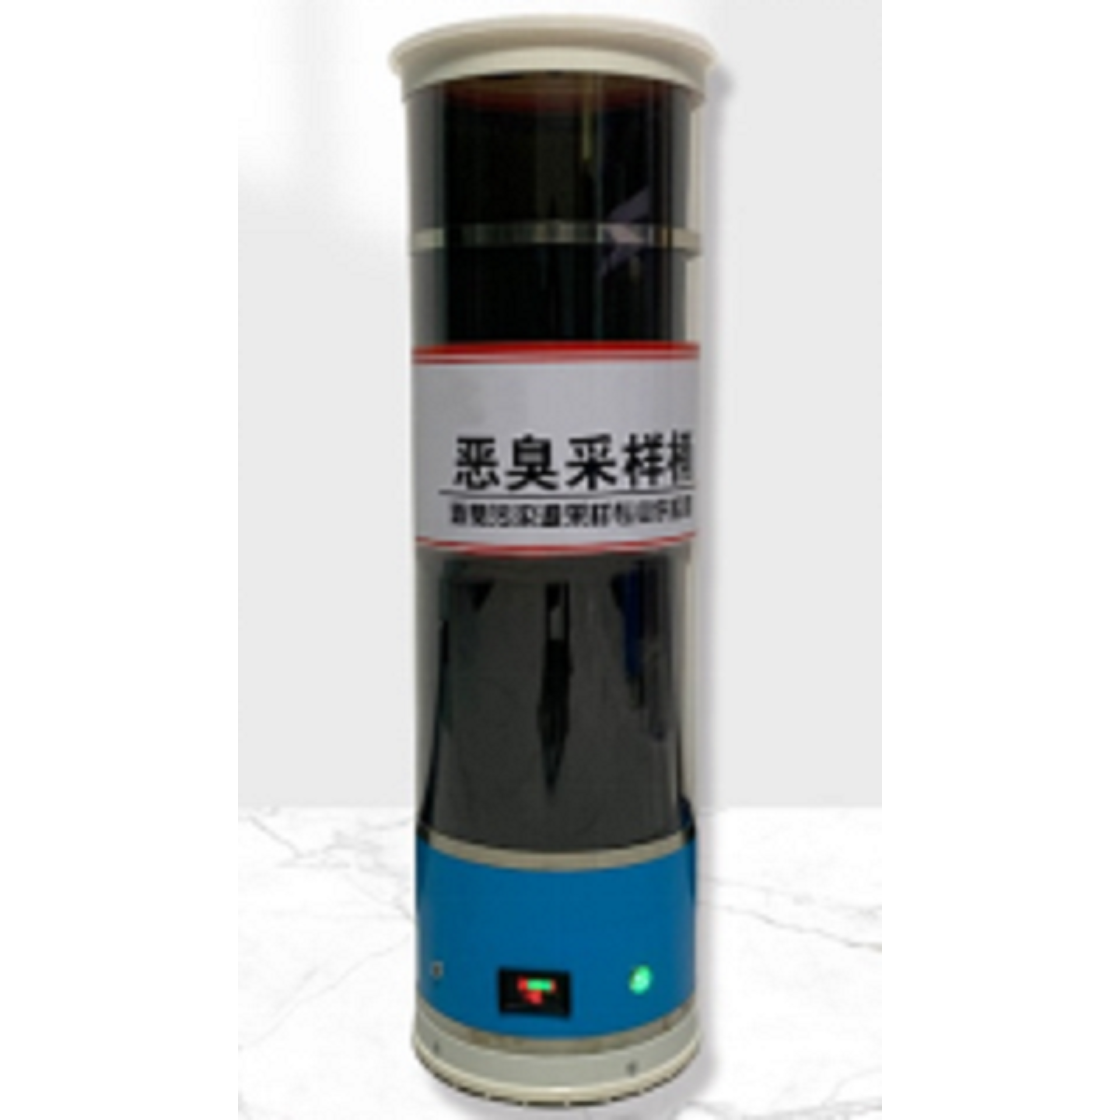 恶臭污染源采样器 XY-1000/2000型号恶臭污染源采样桶